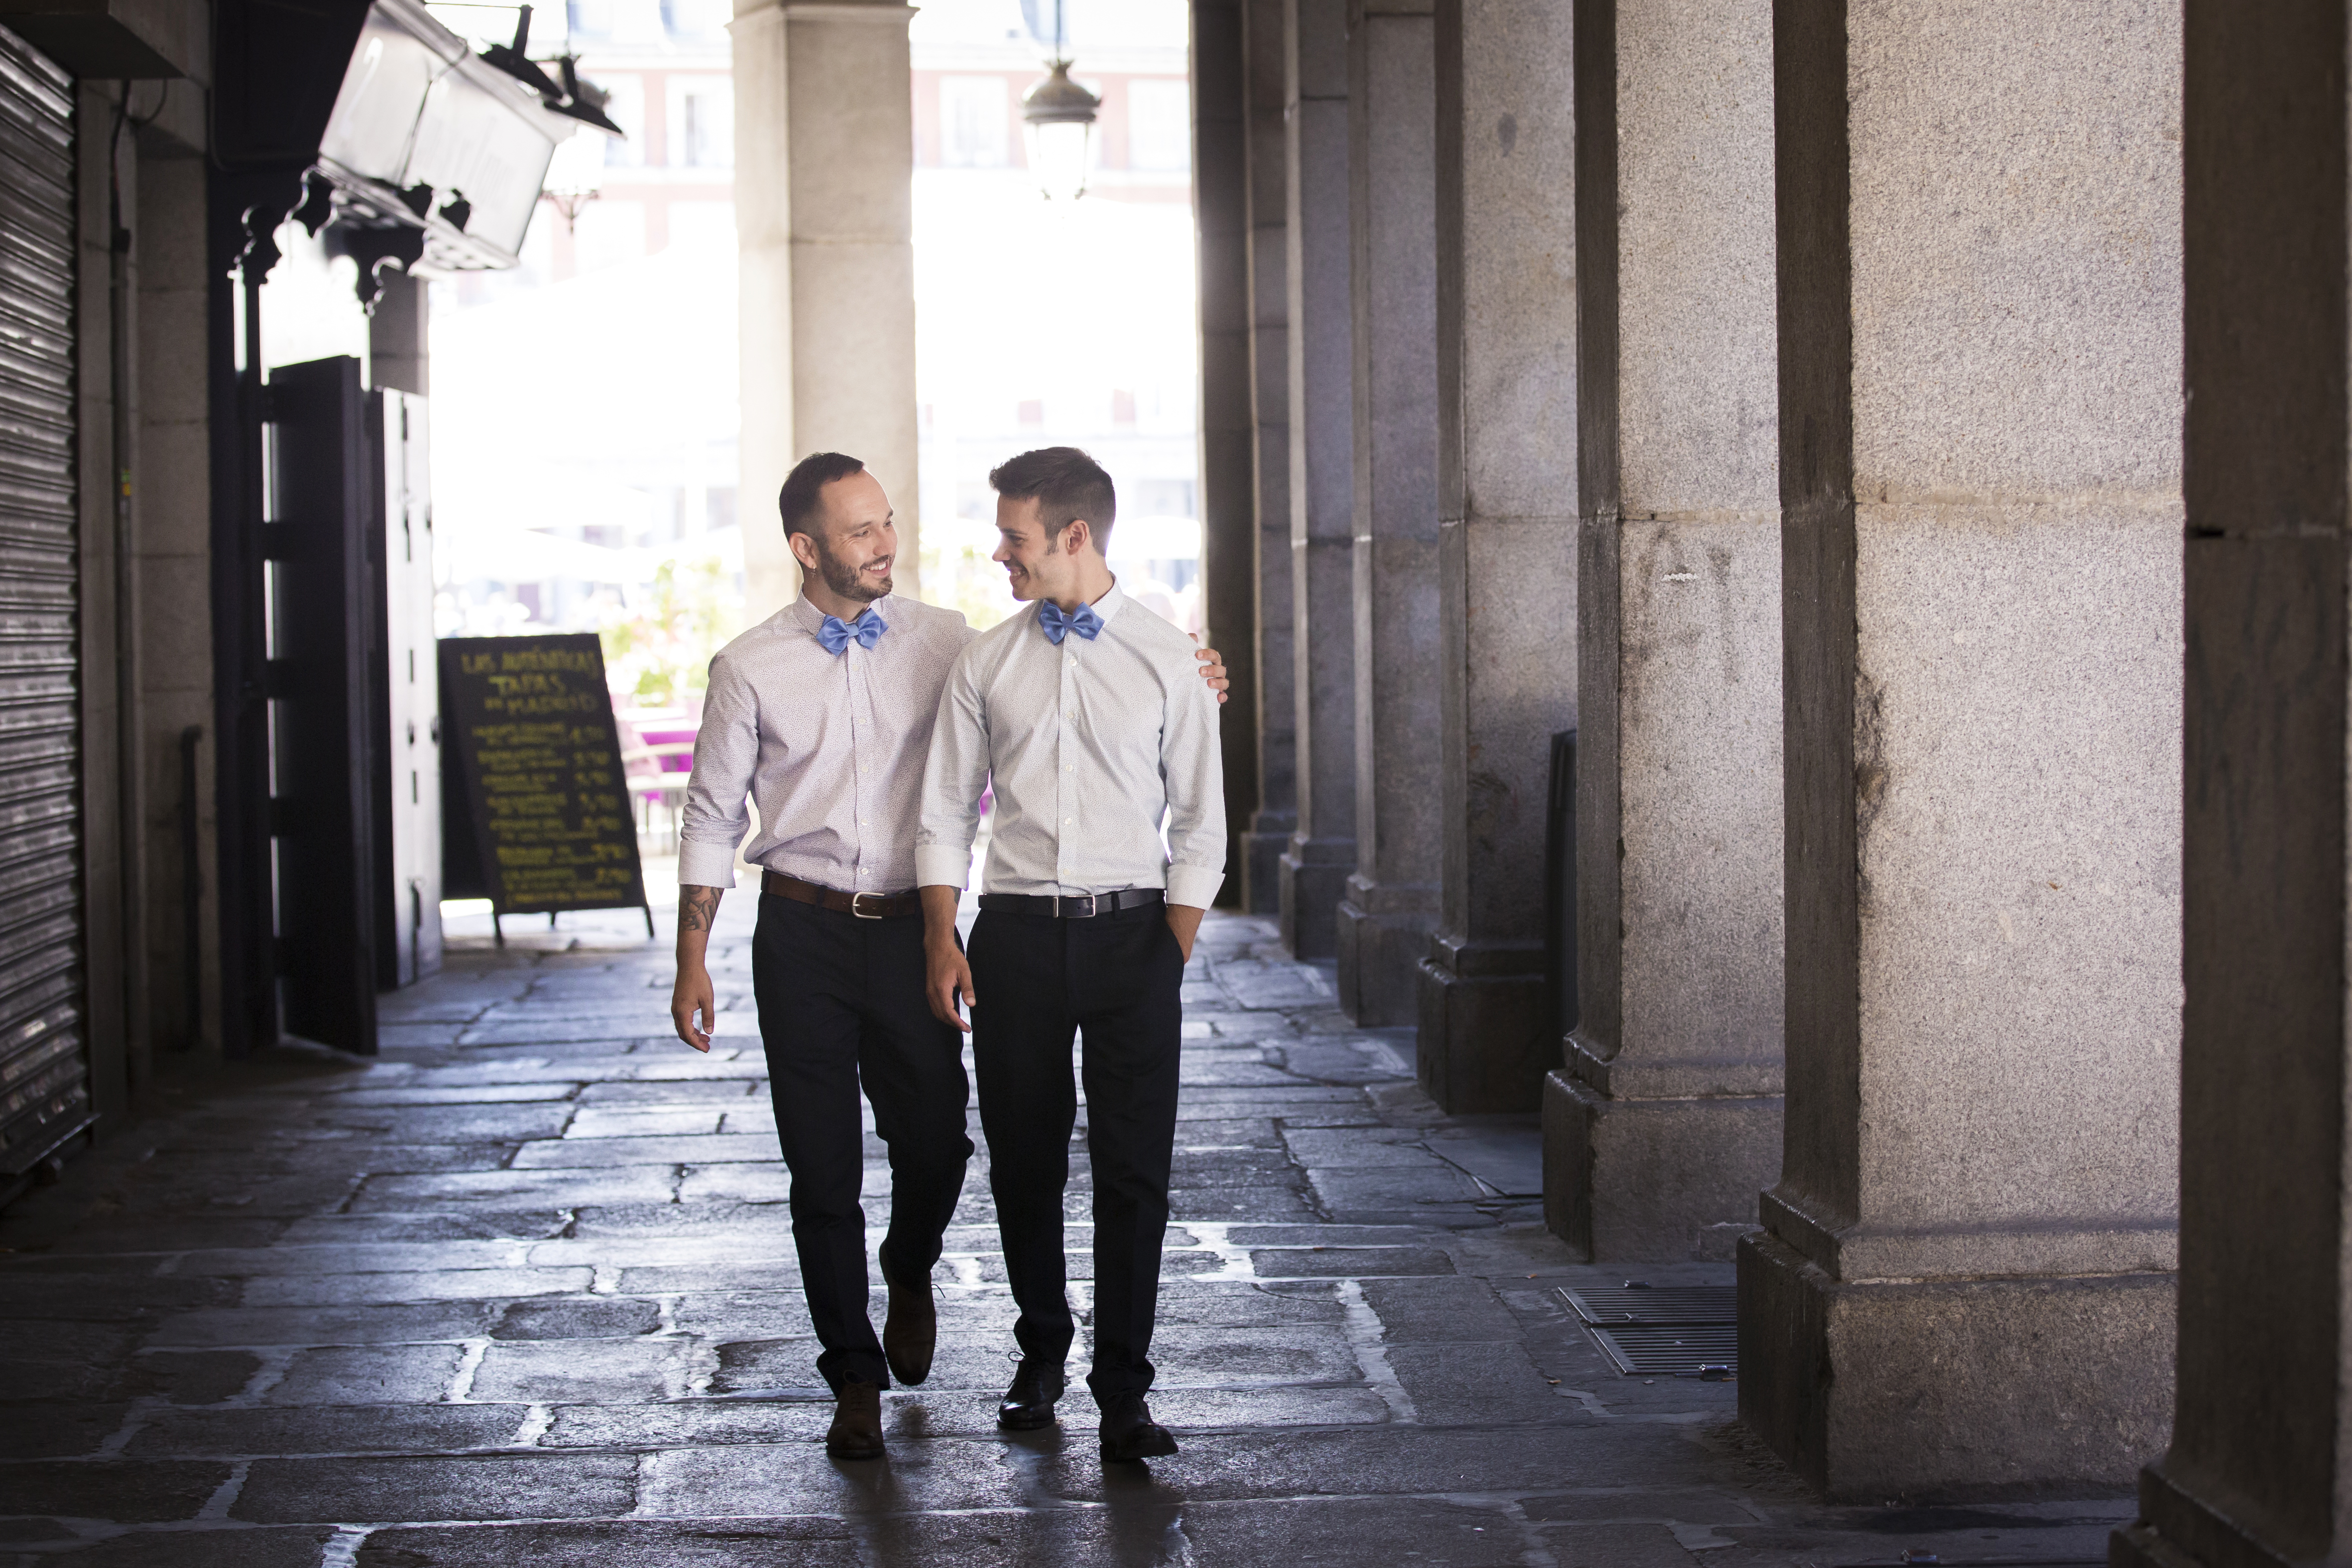 Bodas gays por San Valentín: Dos Bigotes en la Plaza Mayor de Madrid